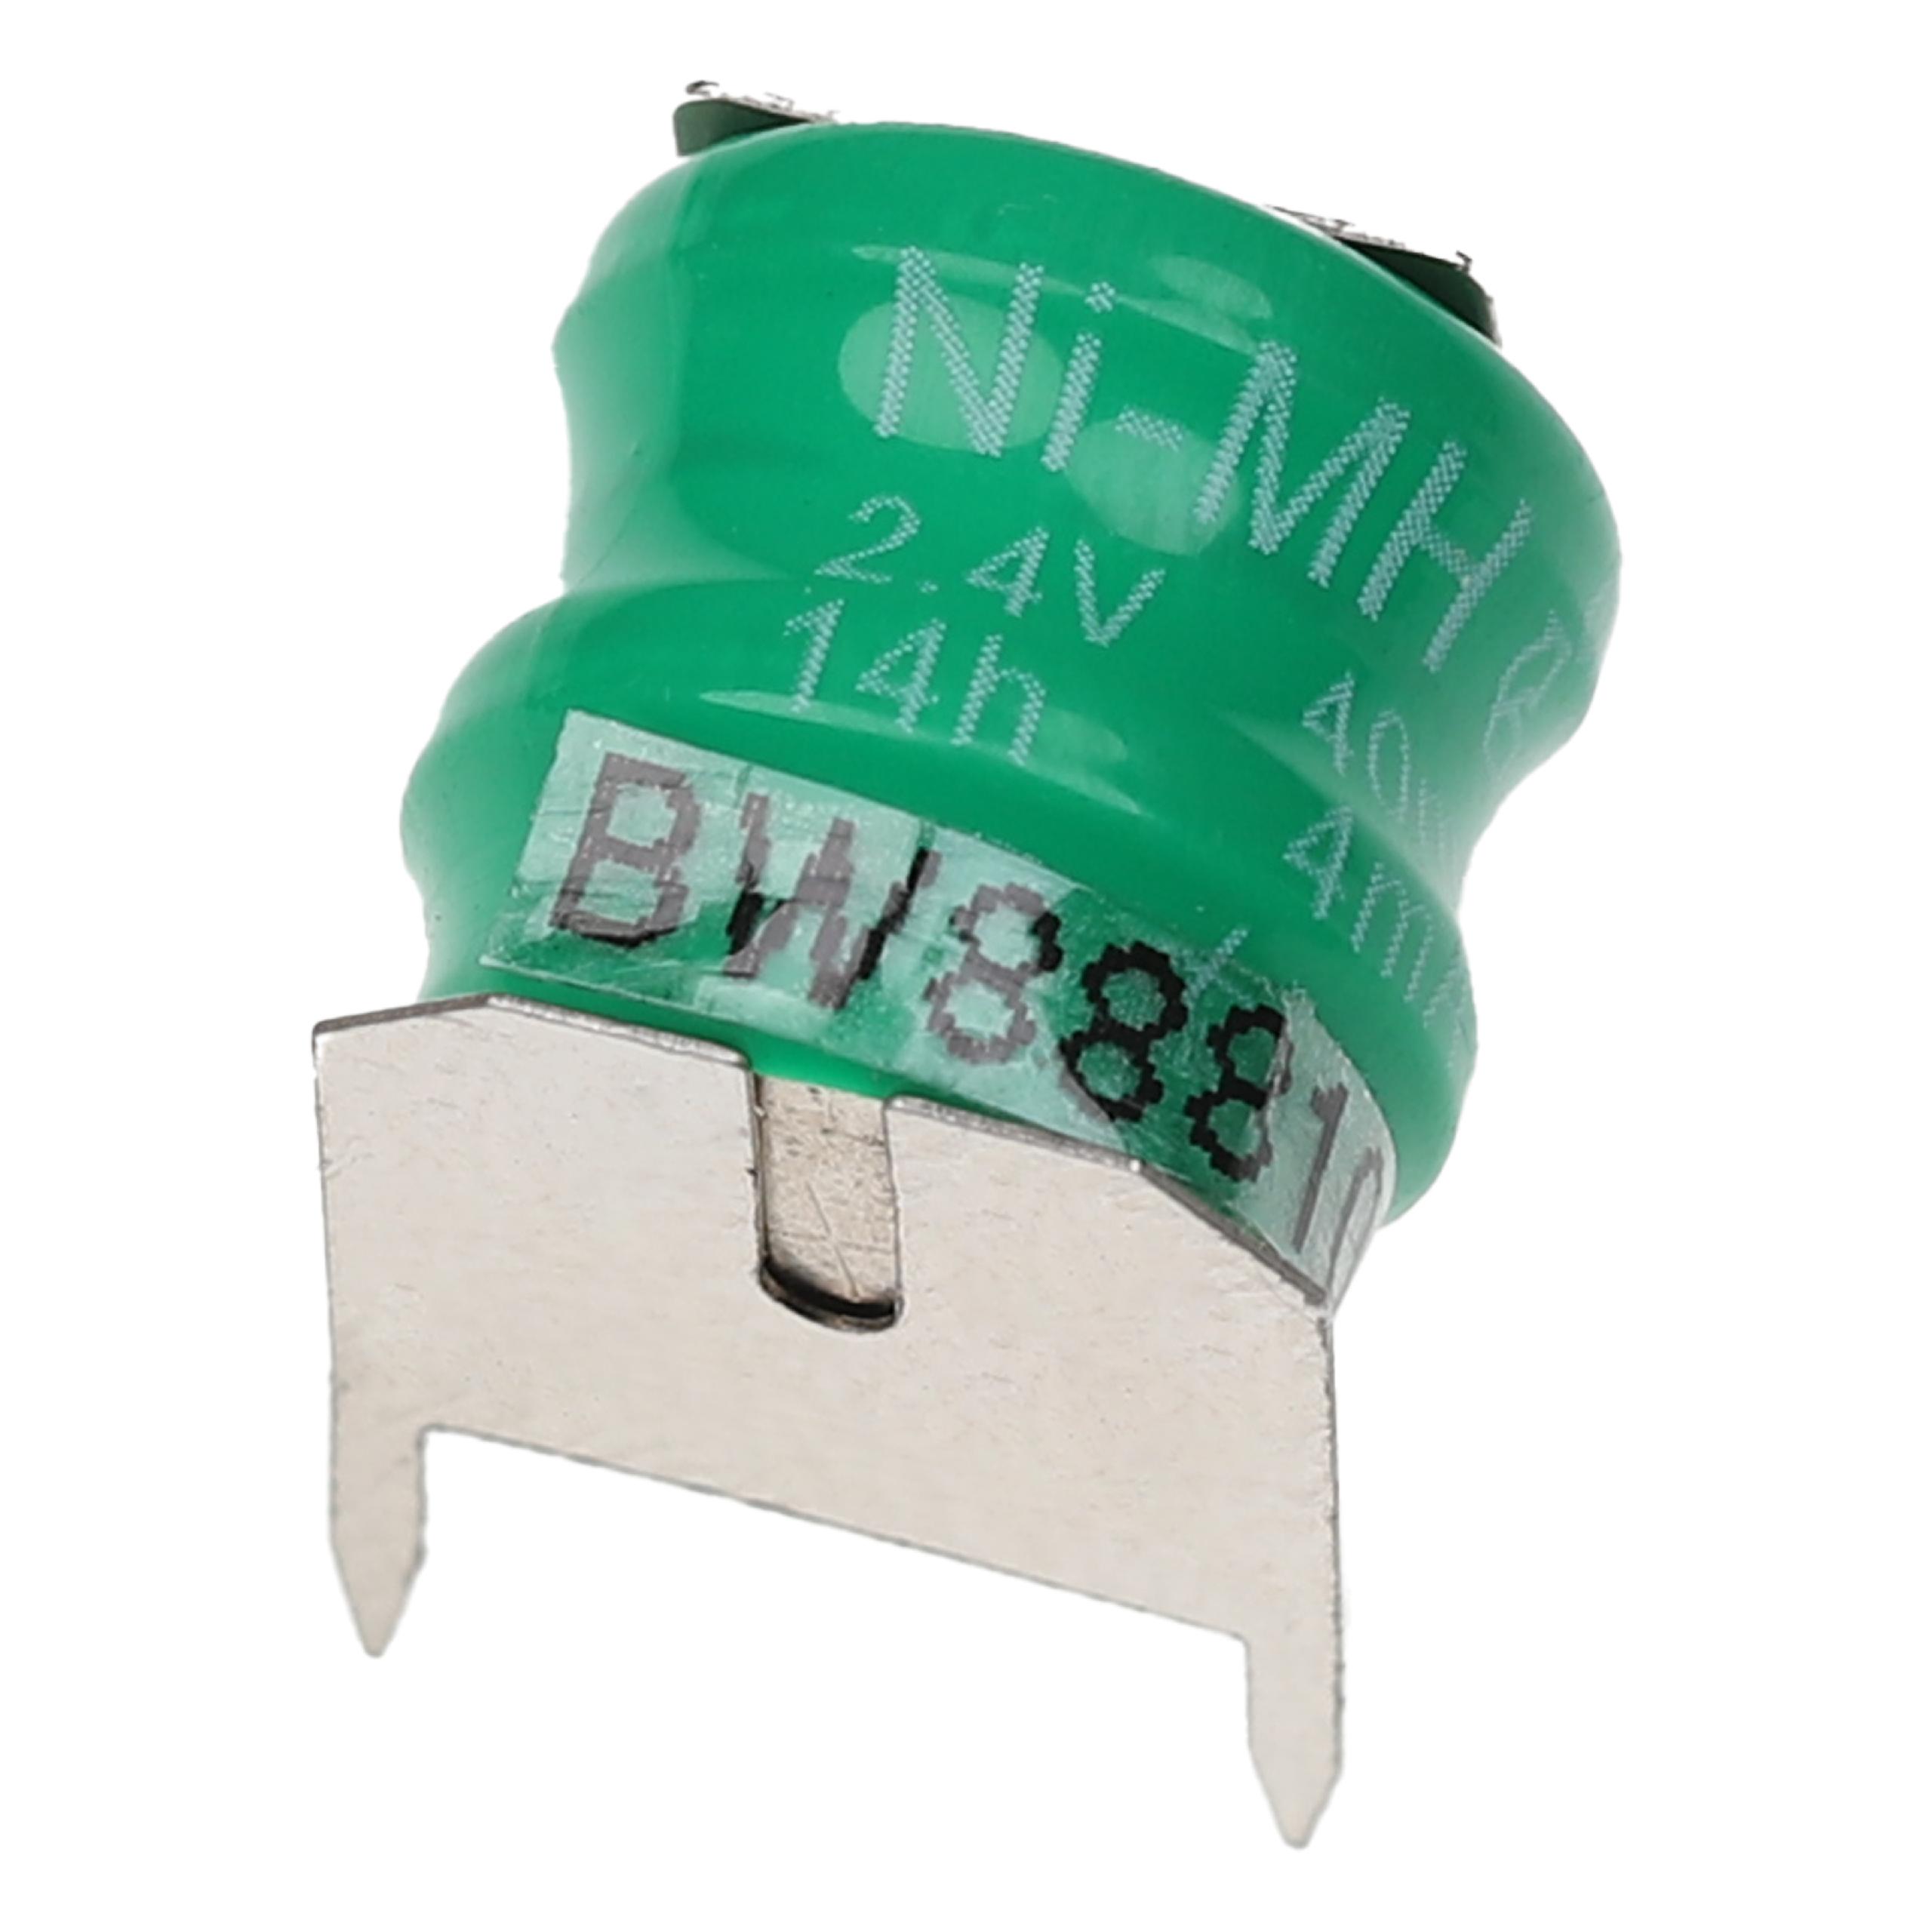 Akumulator guzikowy (2x ogniwo) typ V40H 3 pin do modeli, lamp solarnych itp. zam. V40H - 40 mAh 2,4 V NiMH